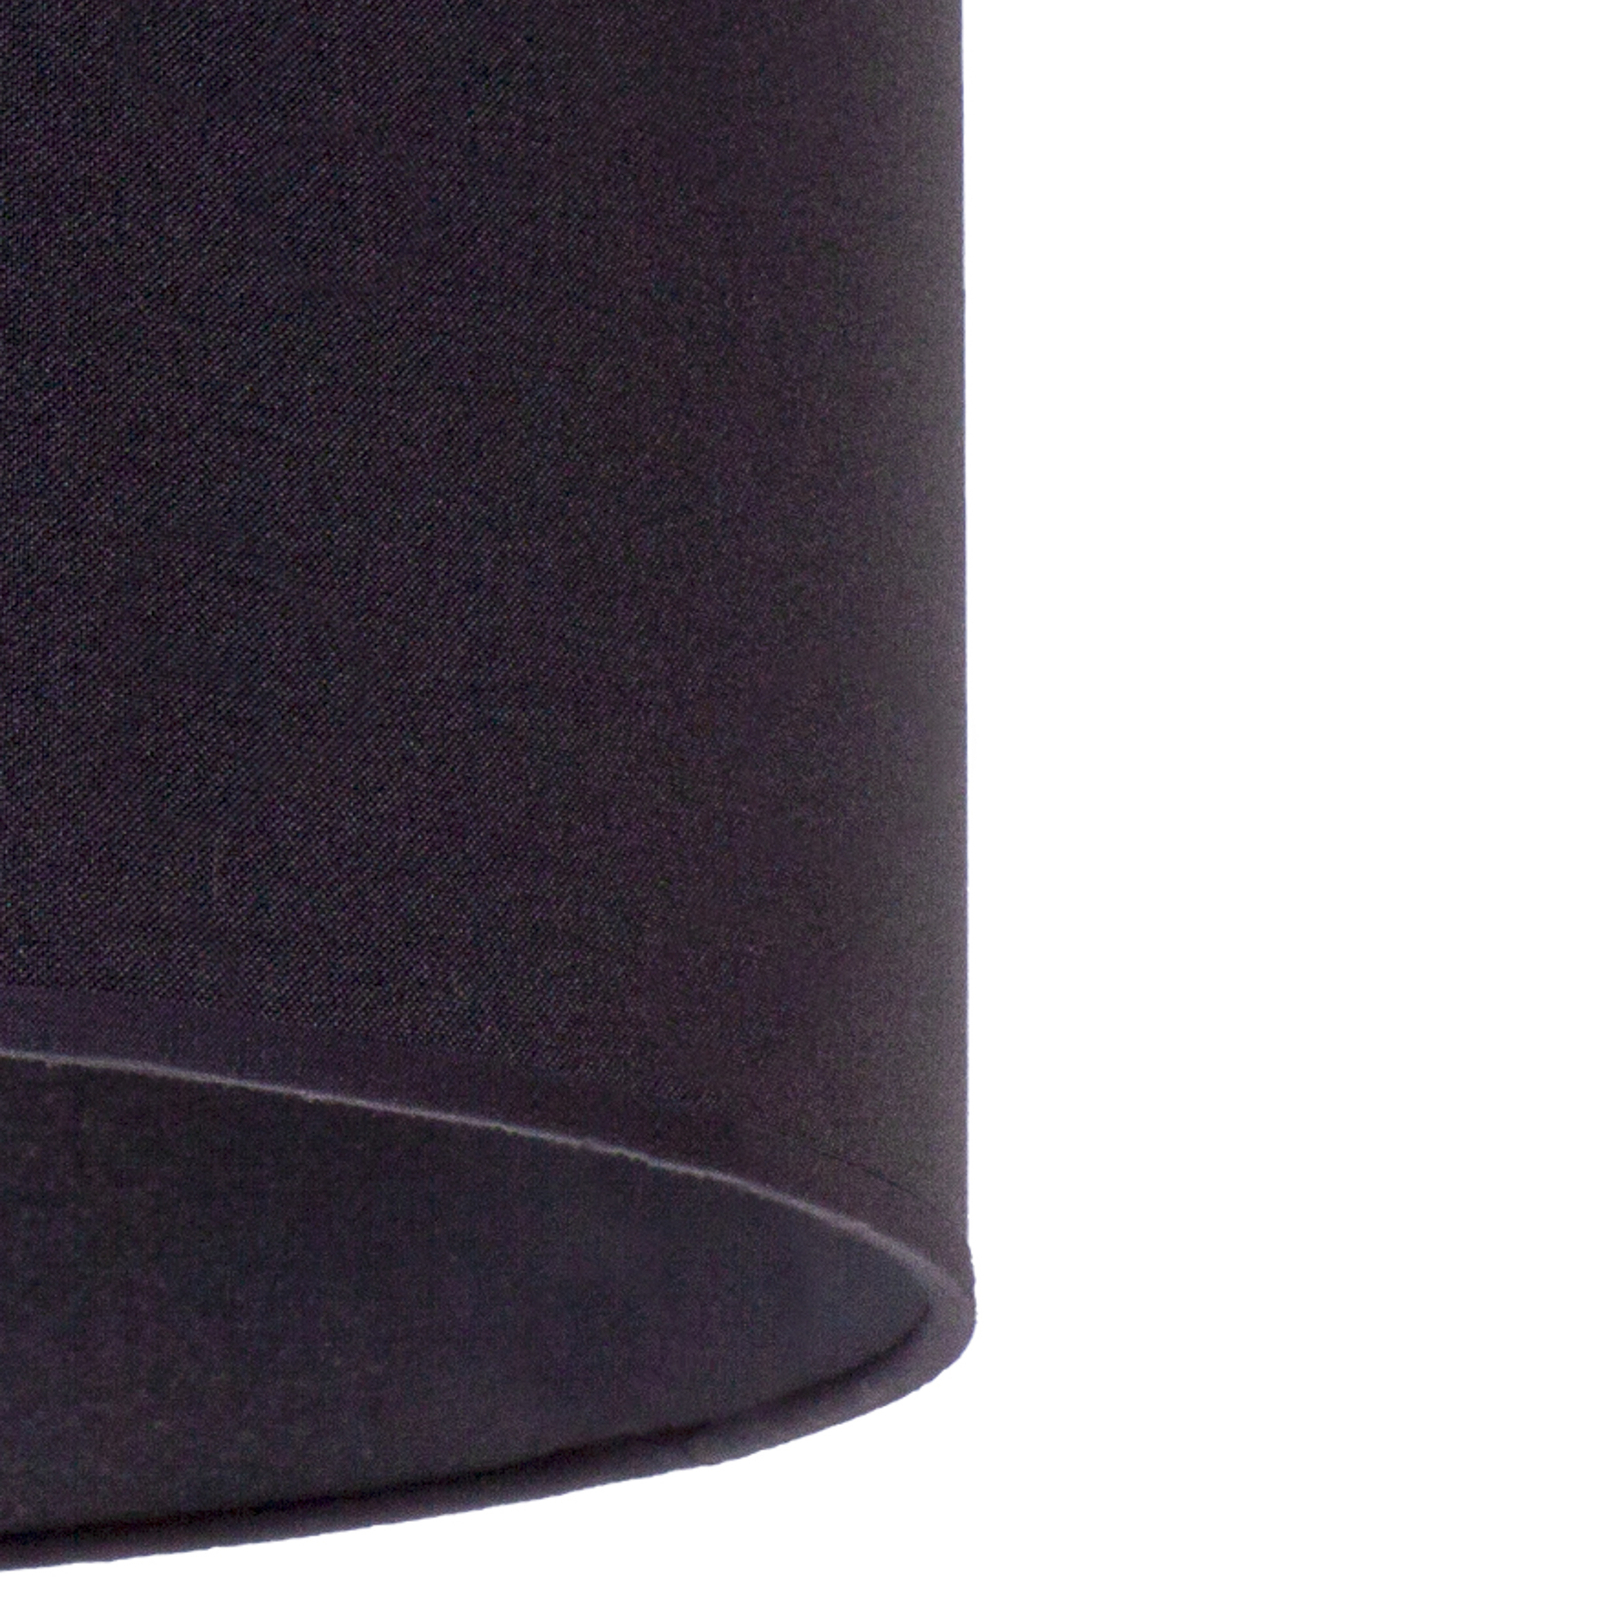 Lampeskjerm Roller Ø 50 cm, svart